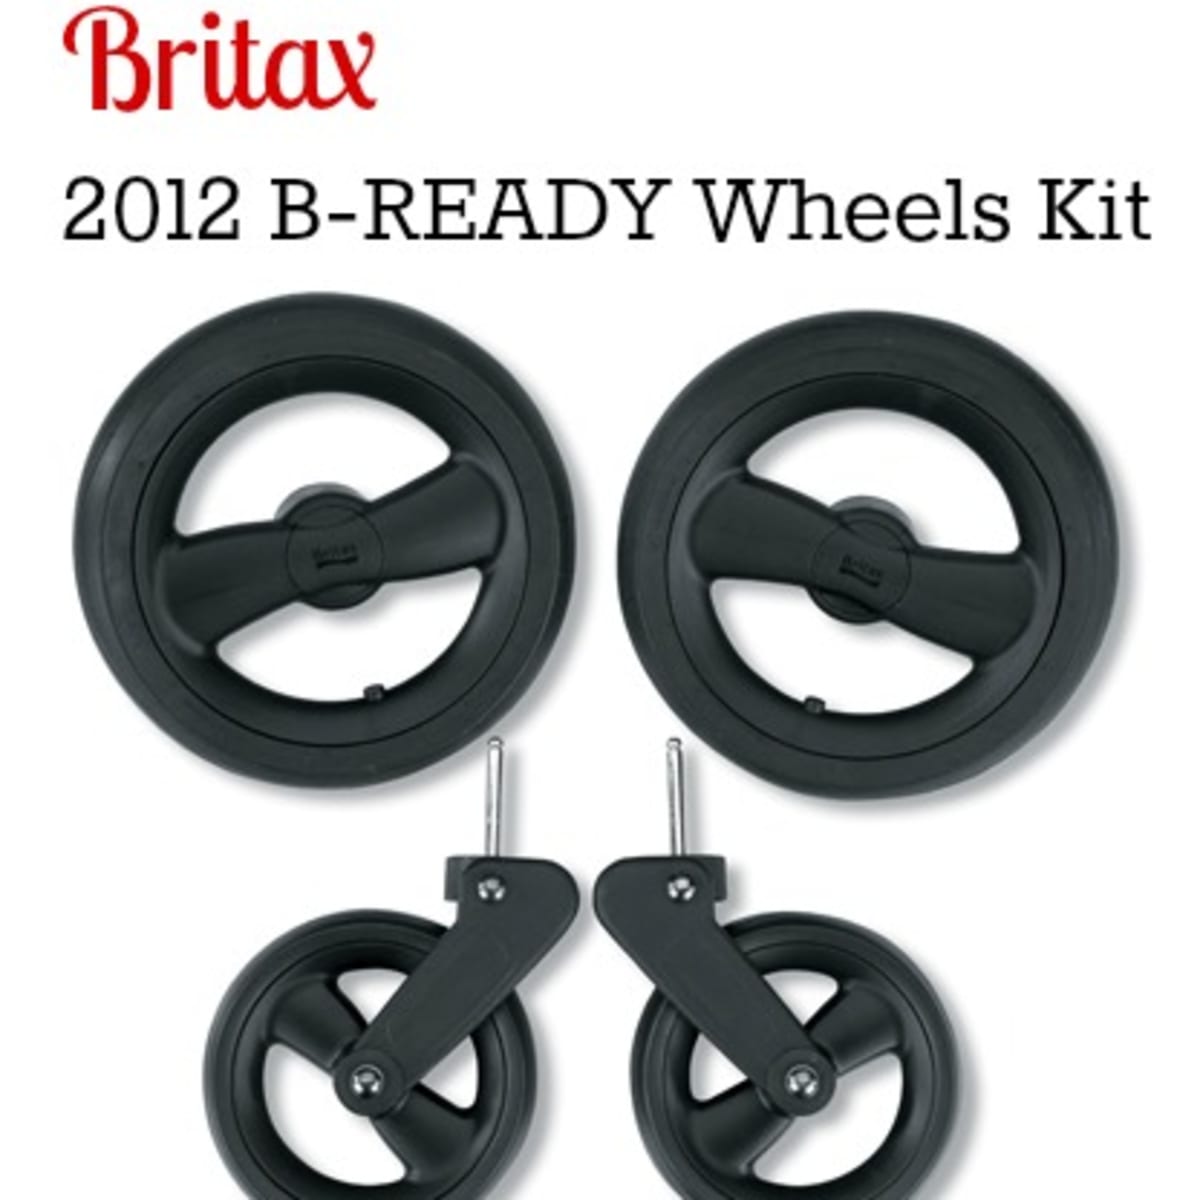 britax b ready stroller 2012